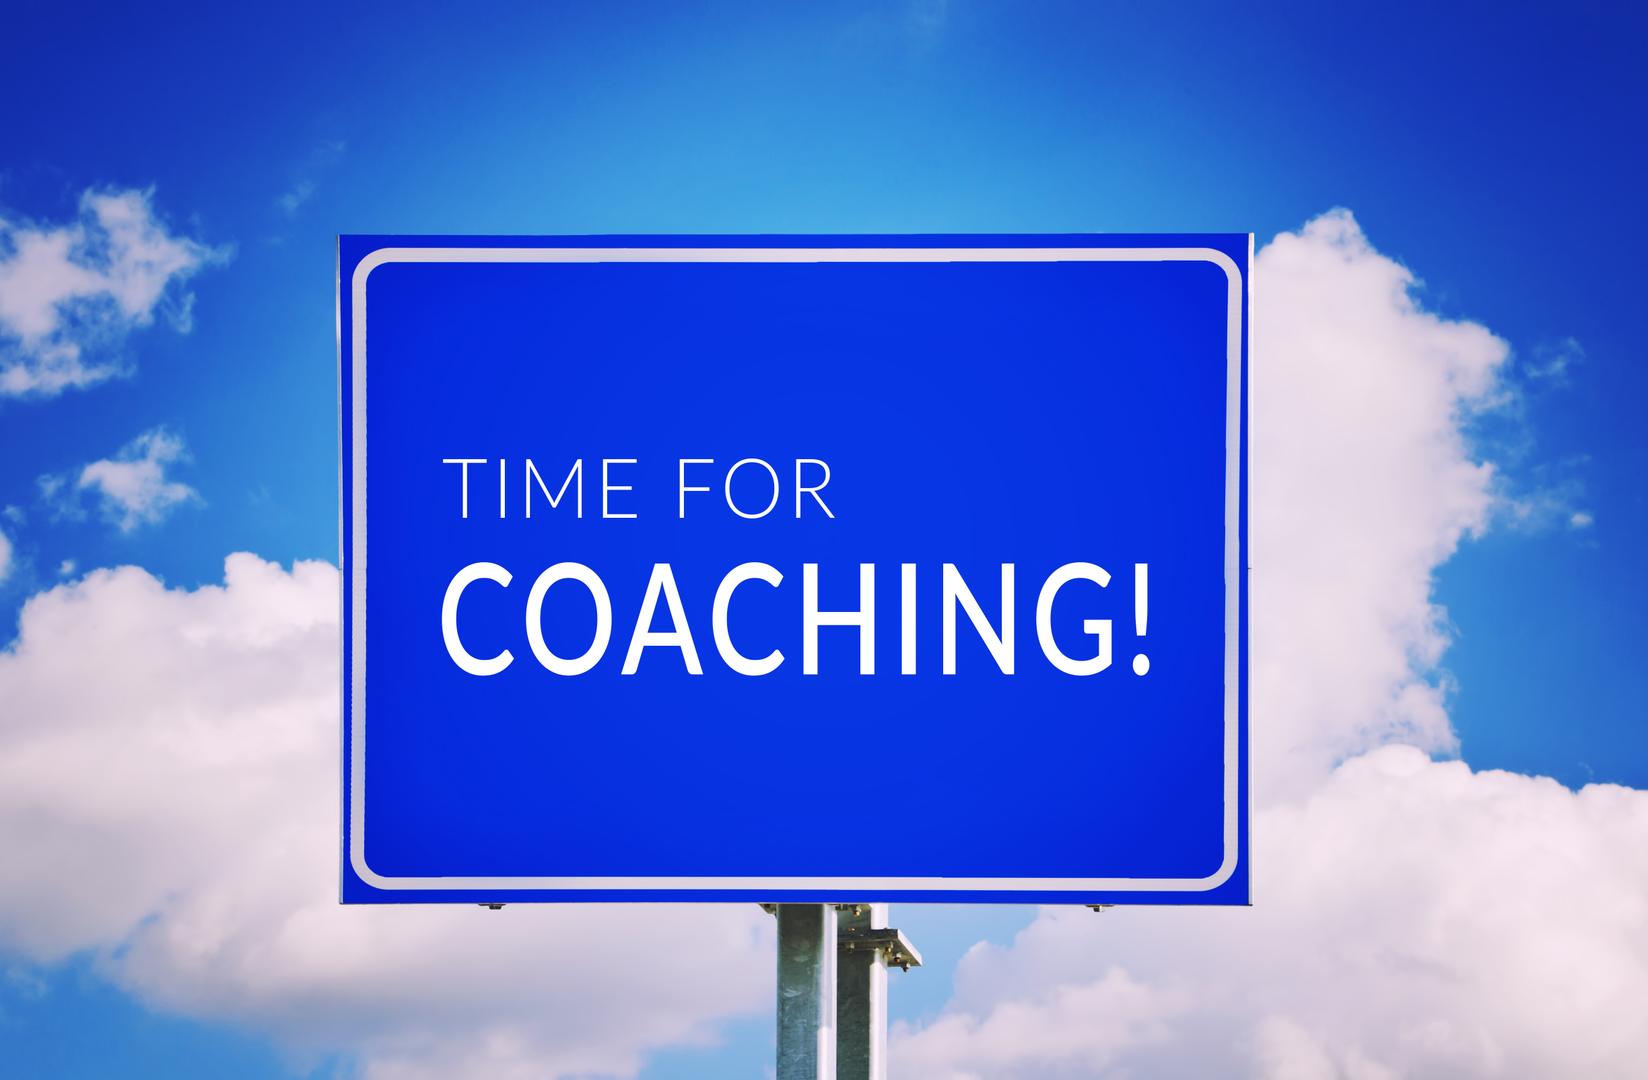 It is Time for Business Coaching bij Moraal Resultaatgericht Coachen in Berkel en Rodenrijs (Lansingerland bij Rotterdam)